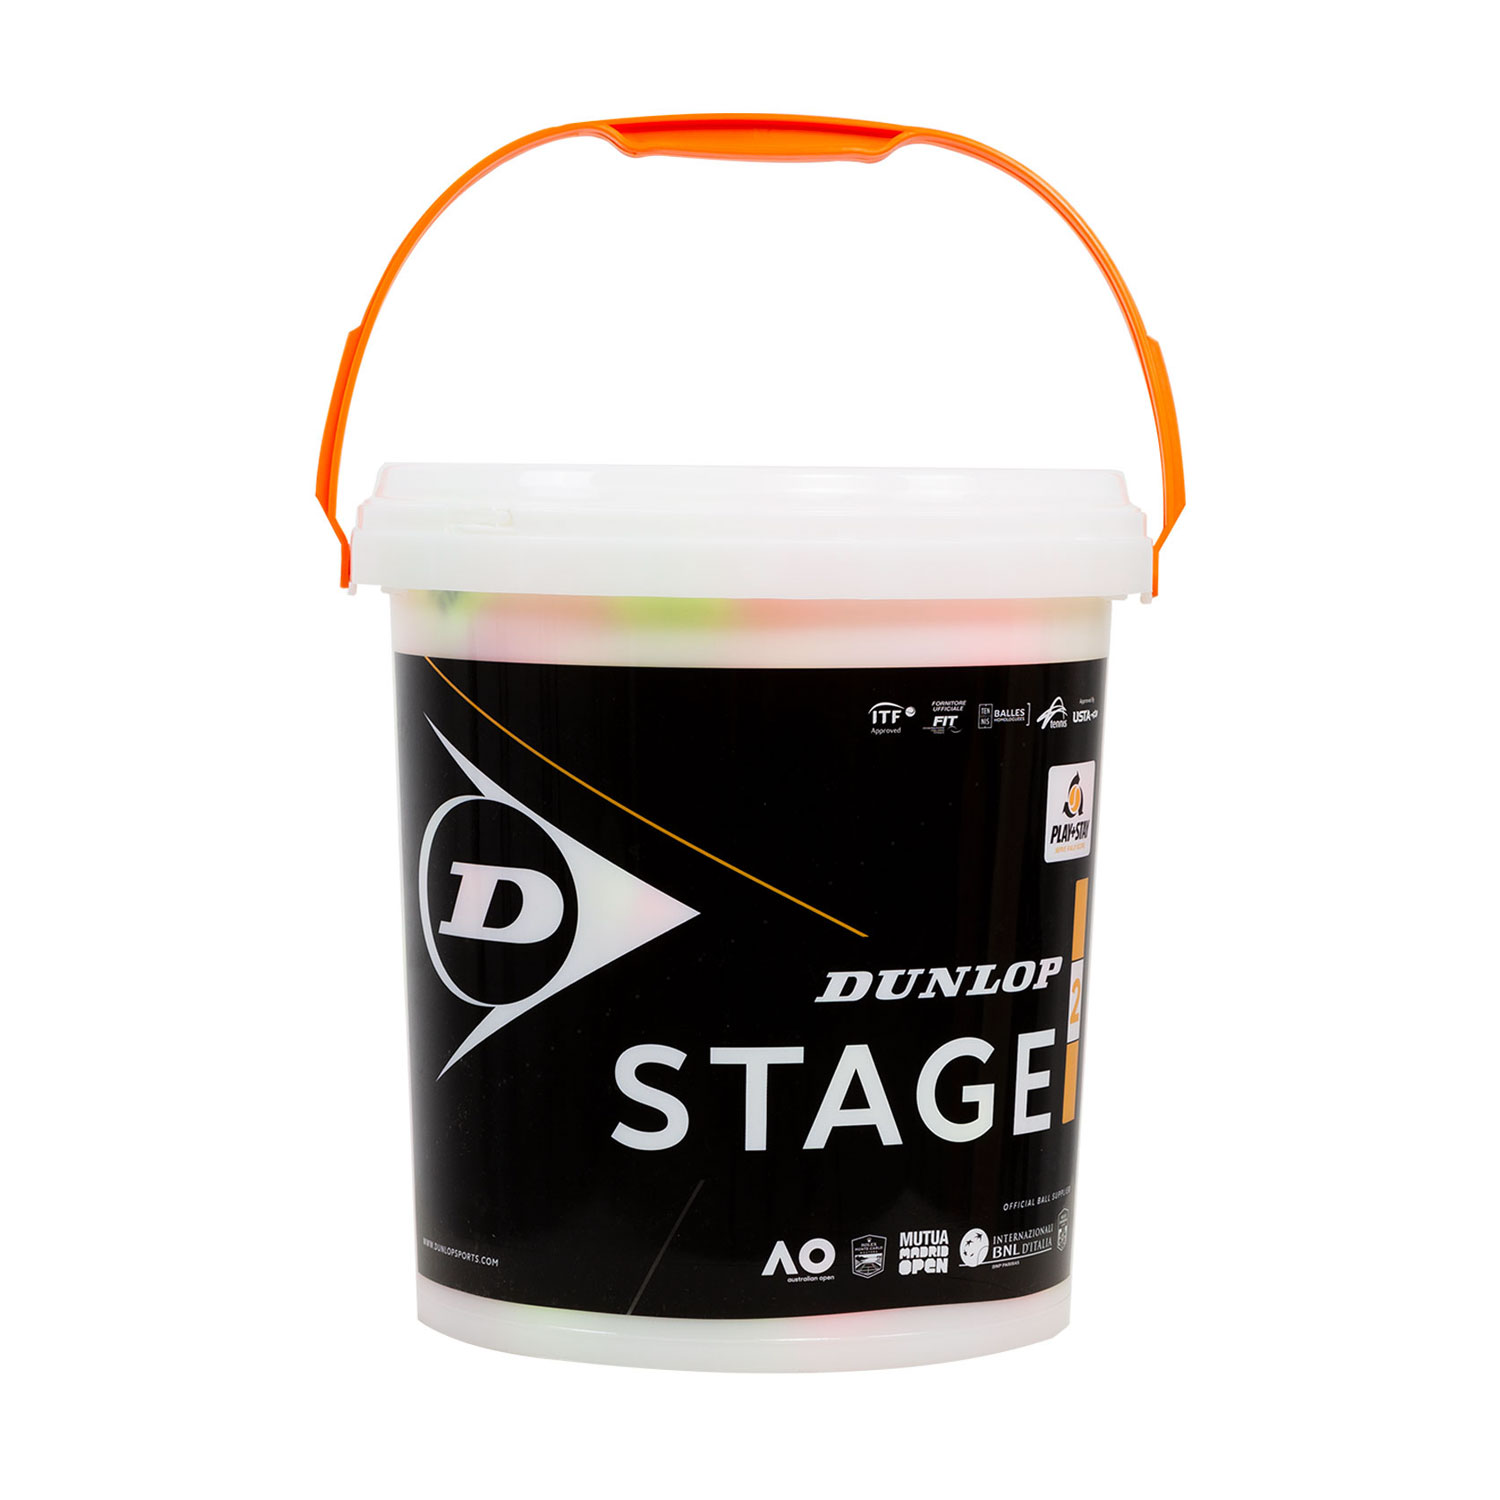 Dunlop Stage 2 Orange - 60 Ball Bucket